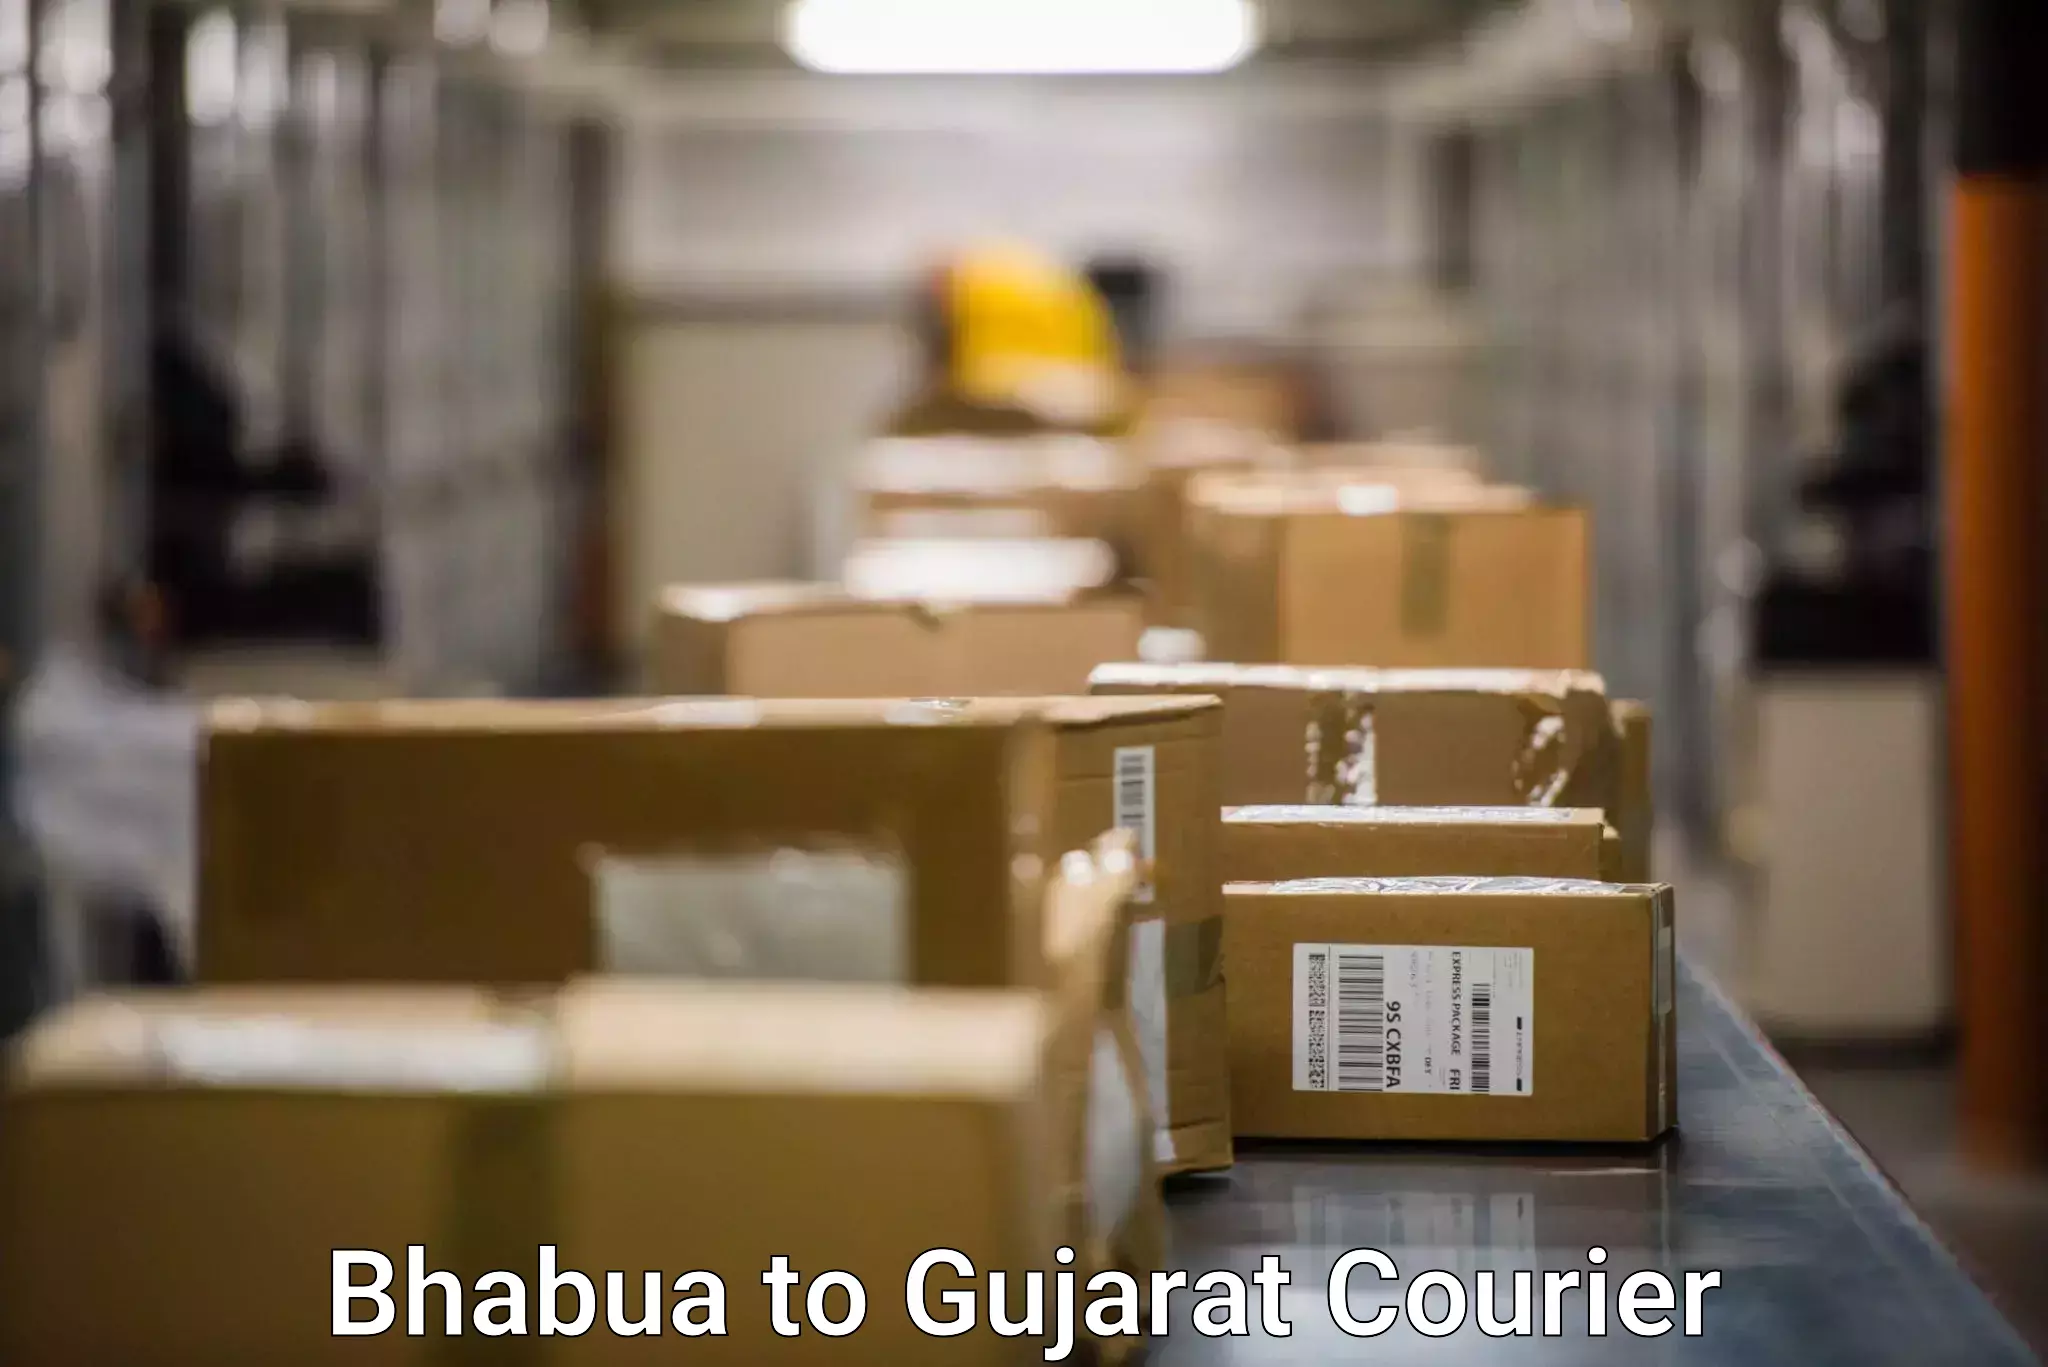 Expedited shipping methods Bhabua to Dholera